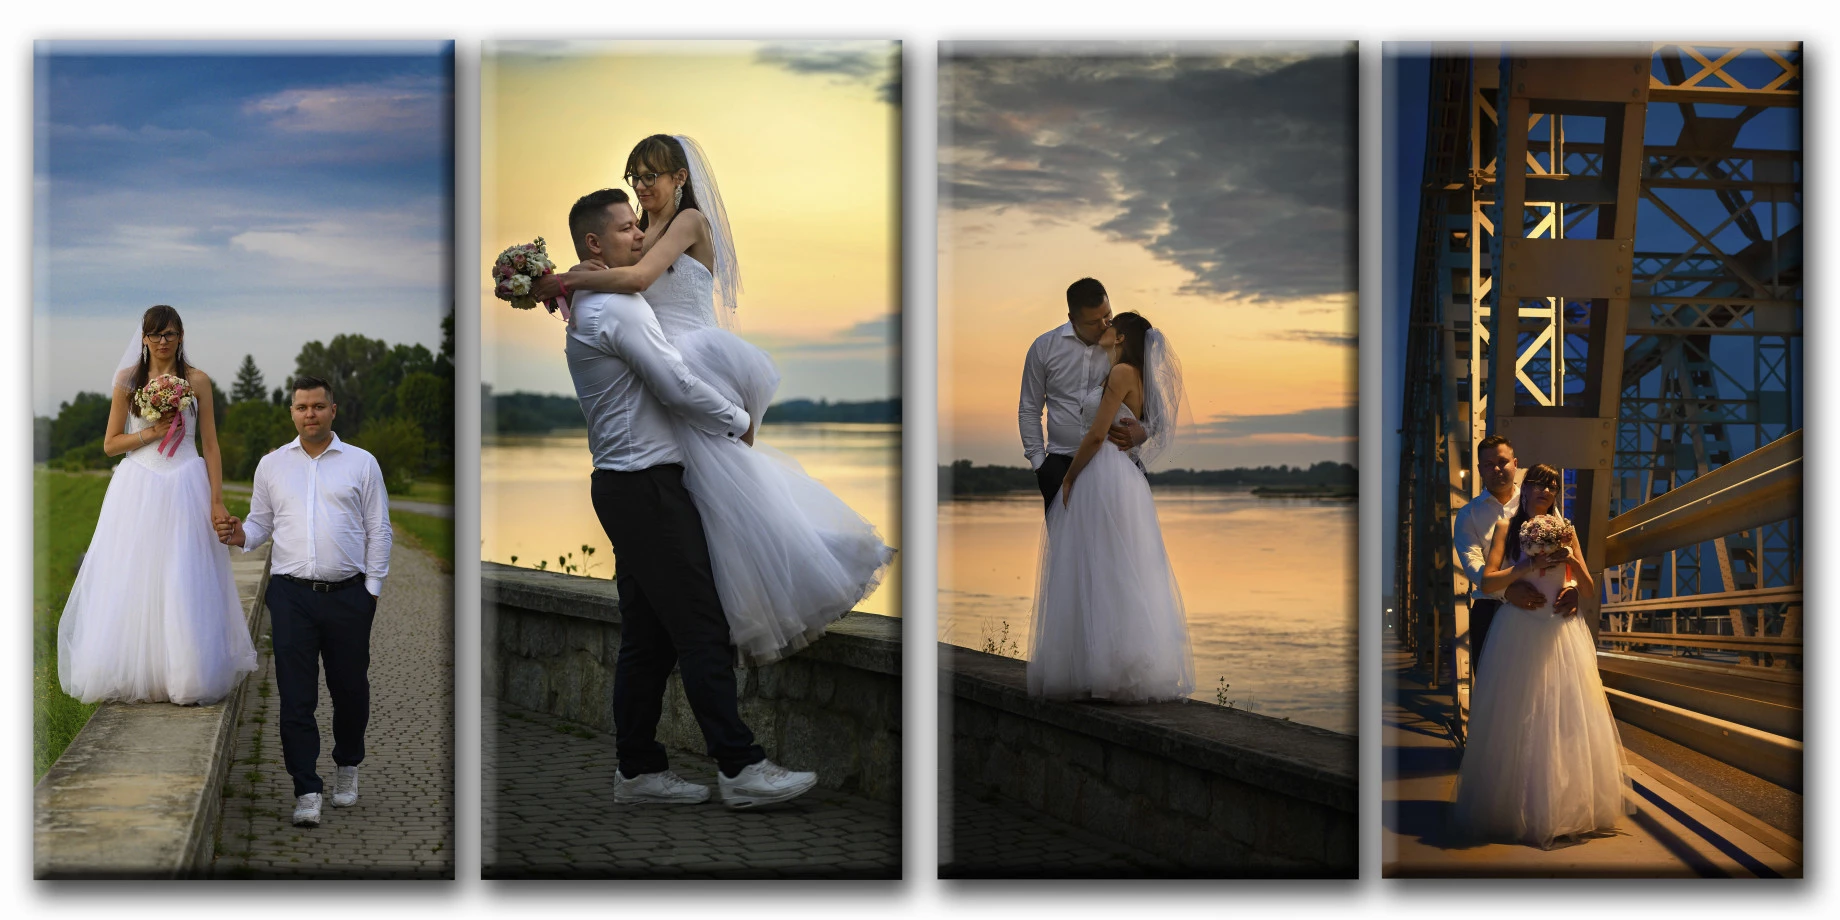 zdjęcia  fotograf krzysztof-harwacki portfolio zdjecia slubne inspiracje wesele plener slubny sesja slubna